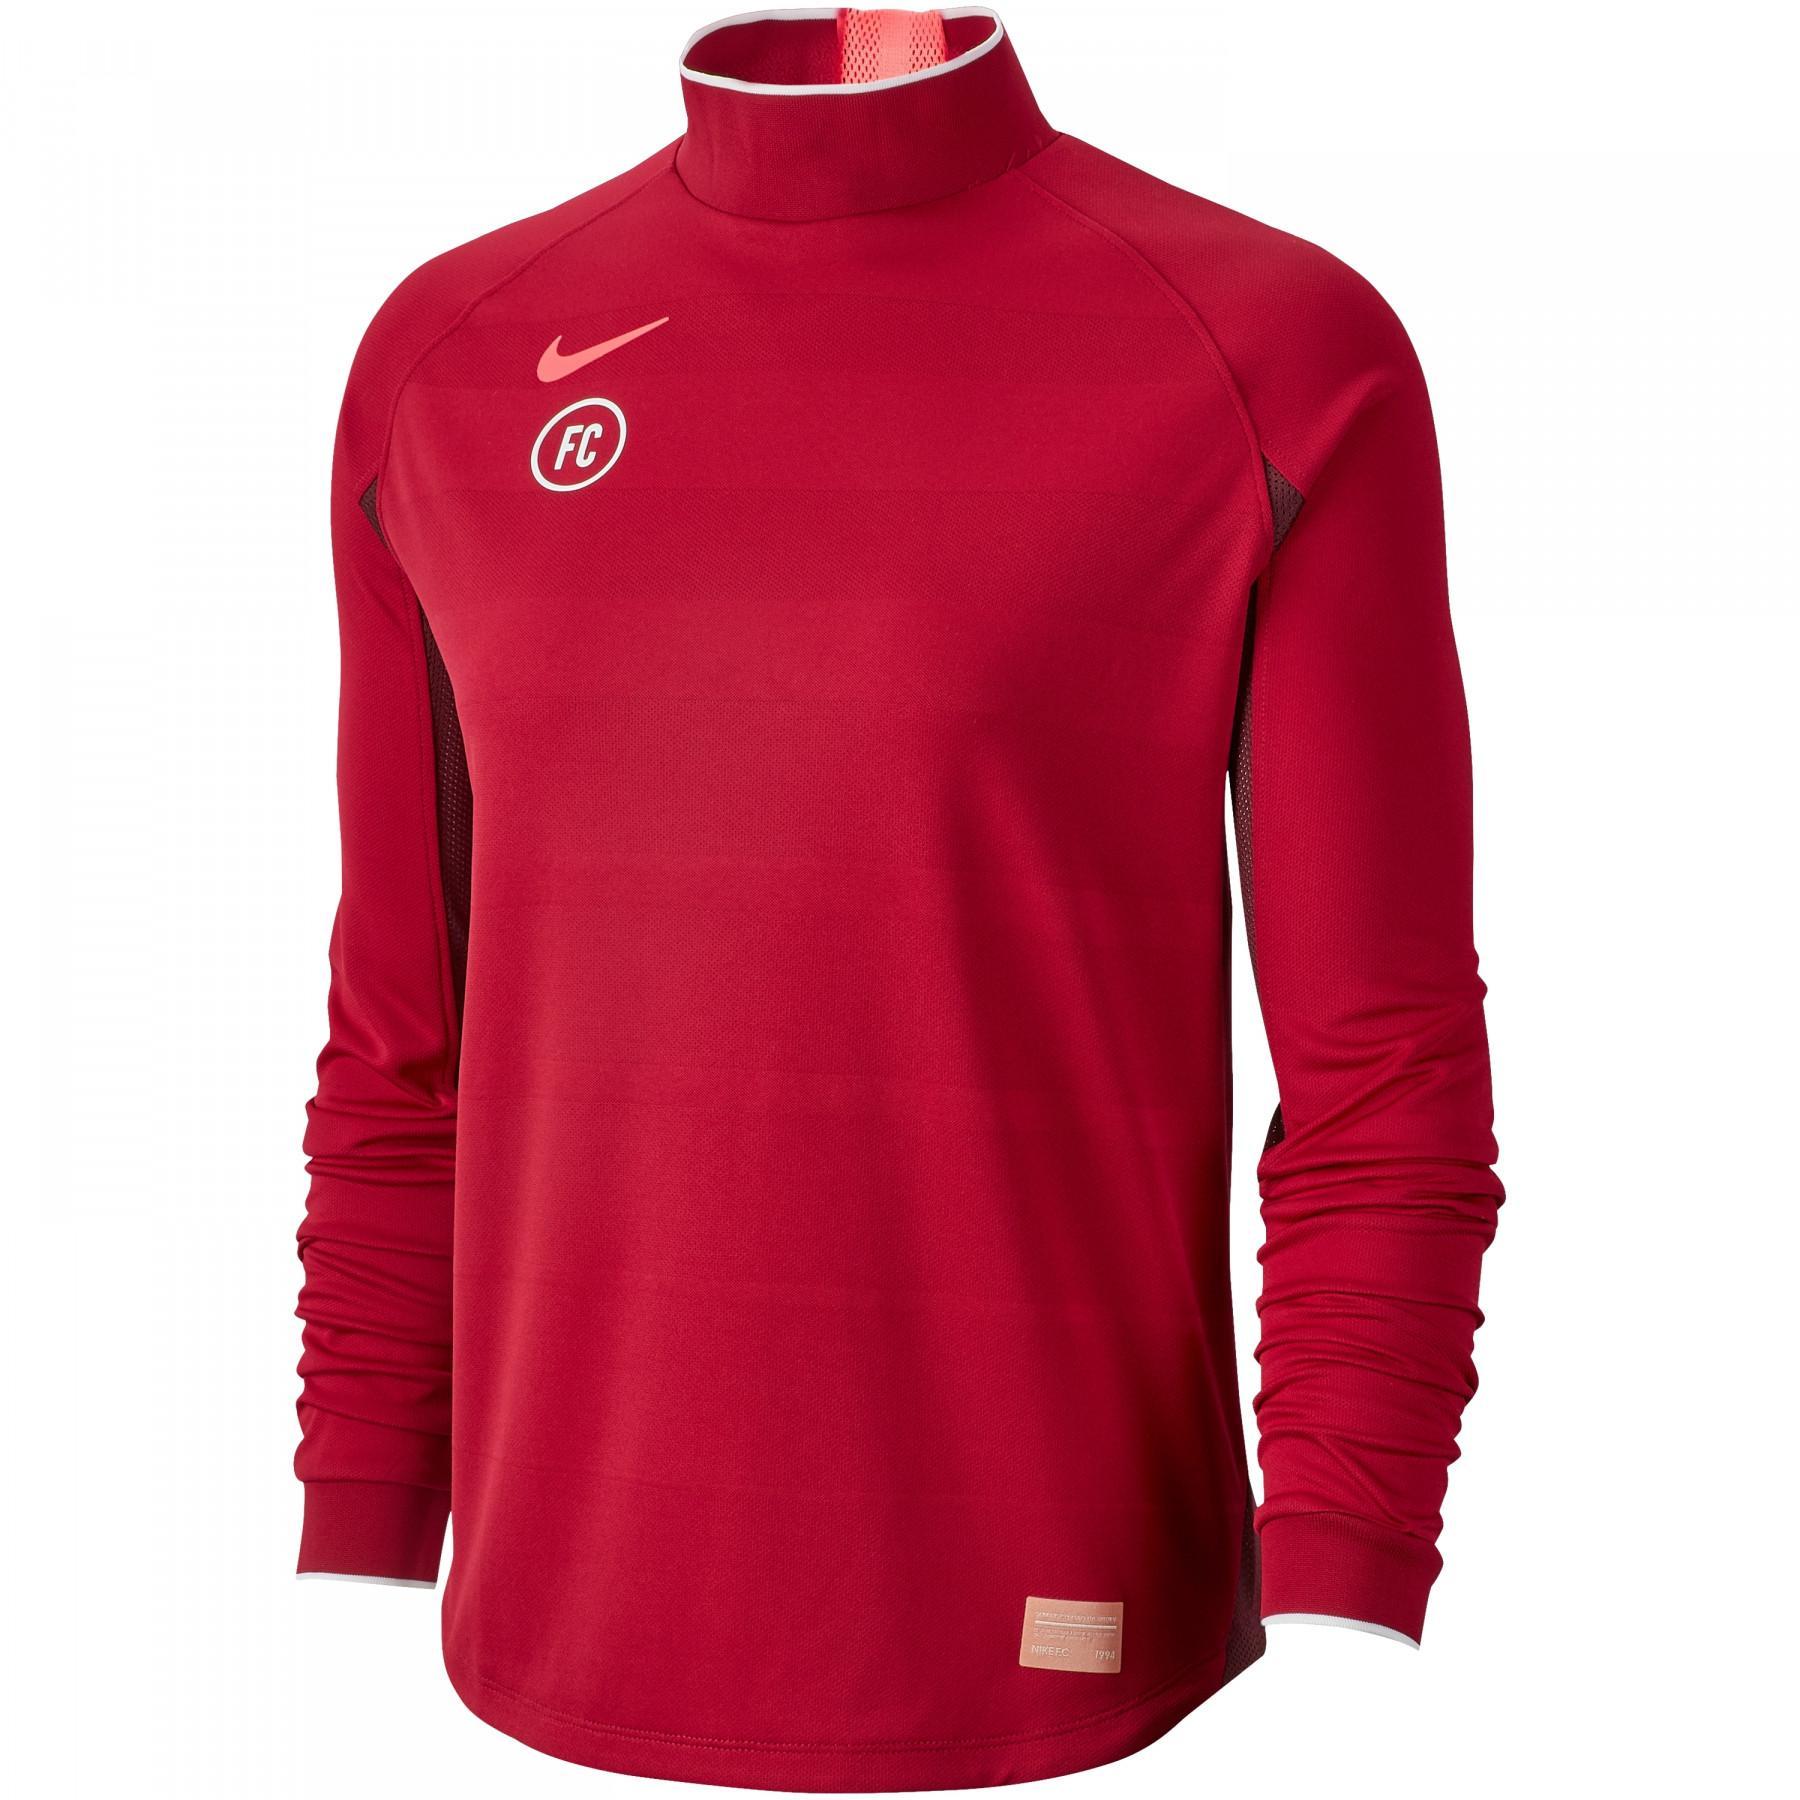 Damen-Sweatshirt Nike FC Dri-Fit